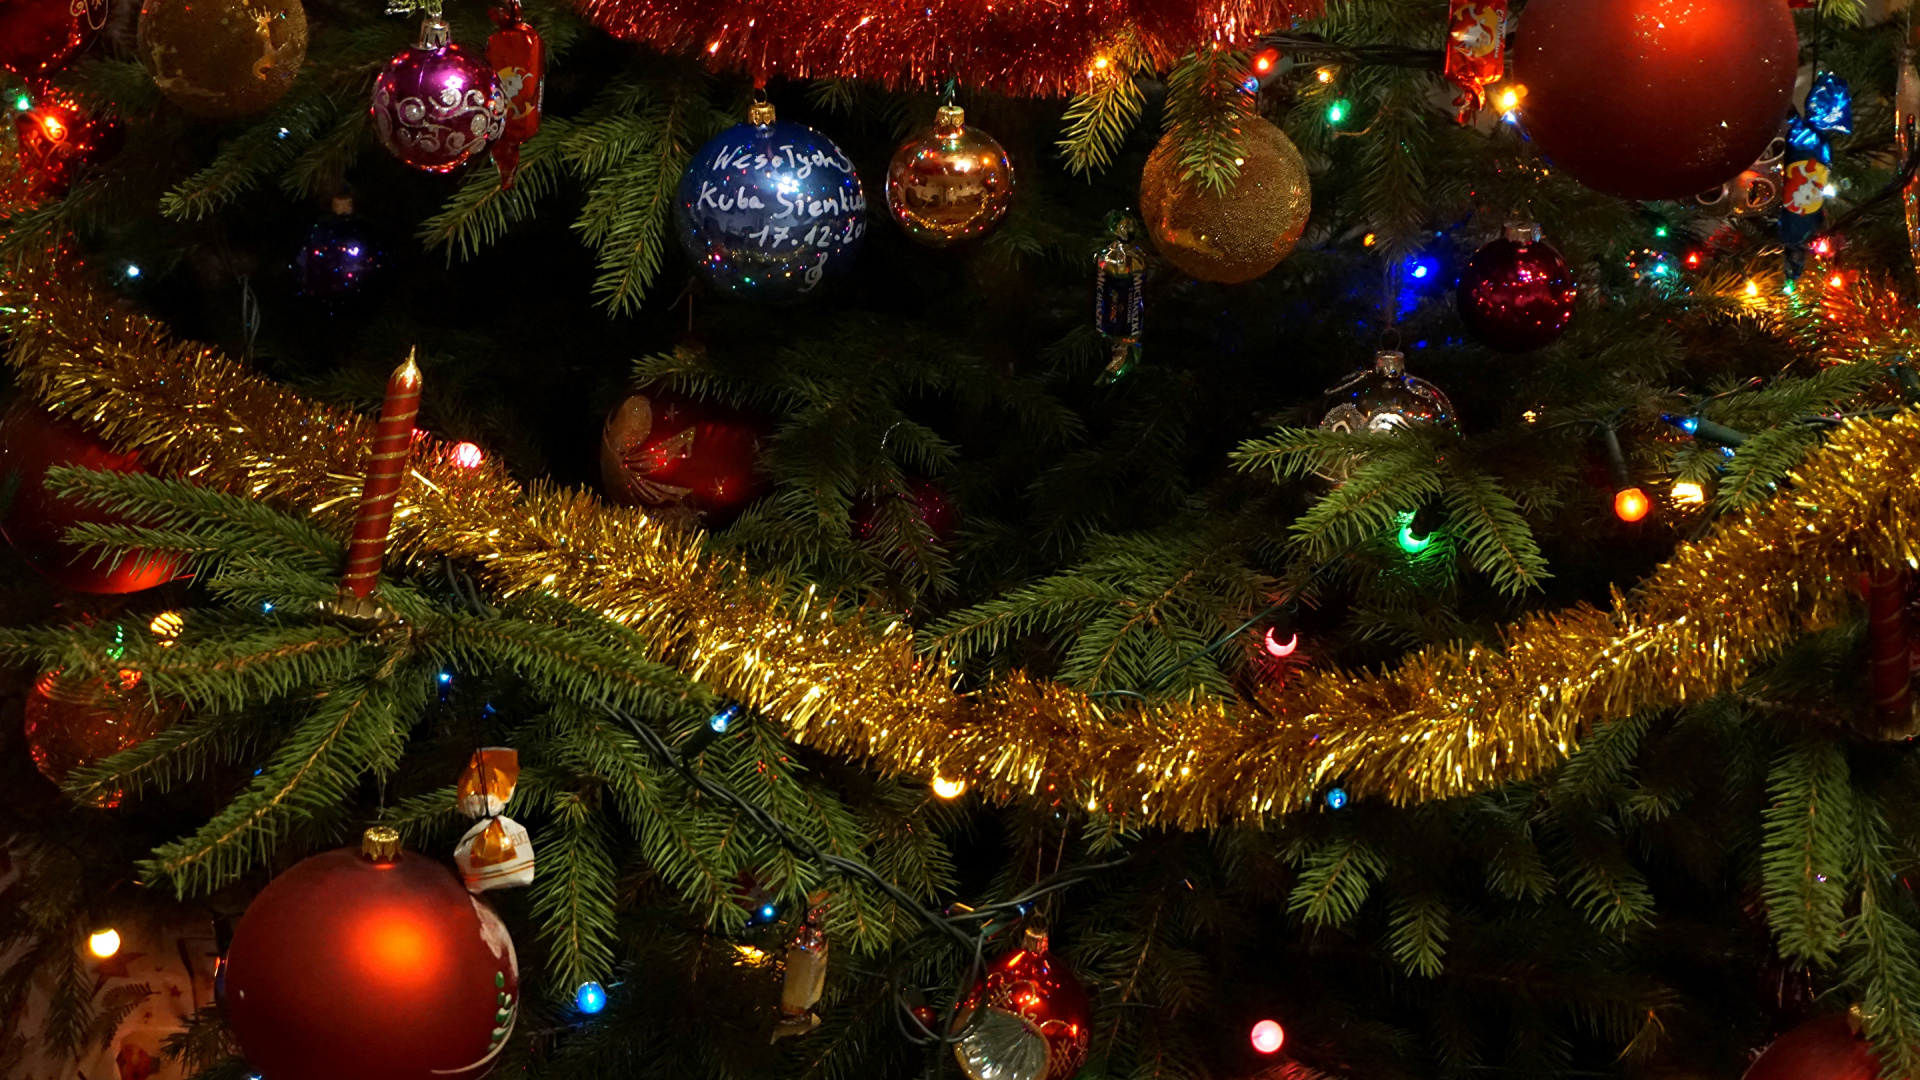 圣诞节那天, 圣诞彩灯, 圣诞树, 圣诞装饰, 人造圣诞树 壁纸 1920x1080 允许